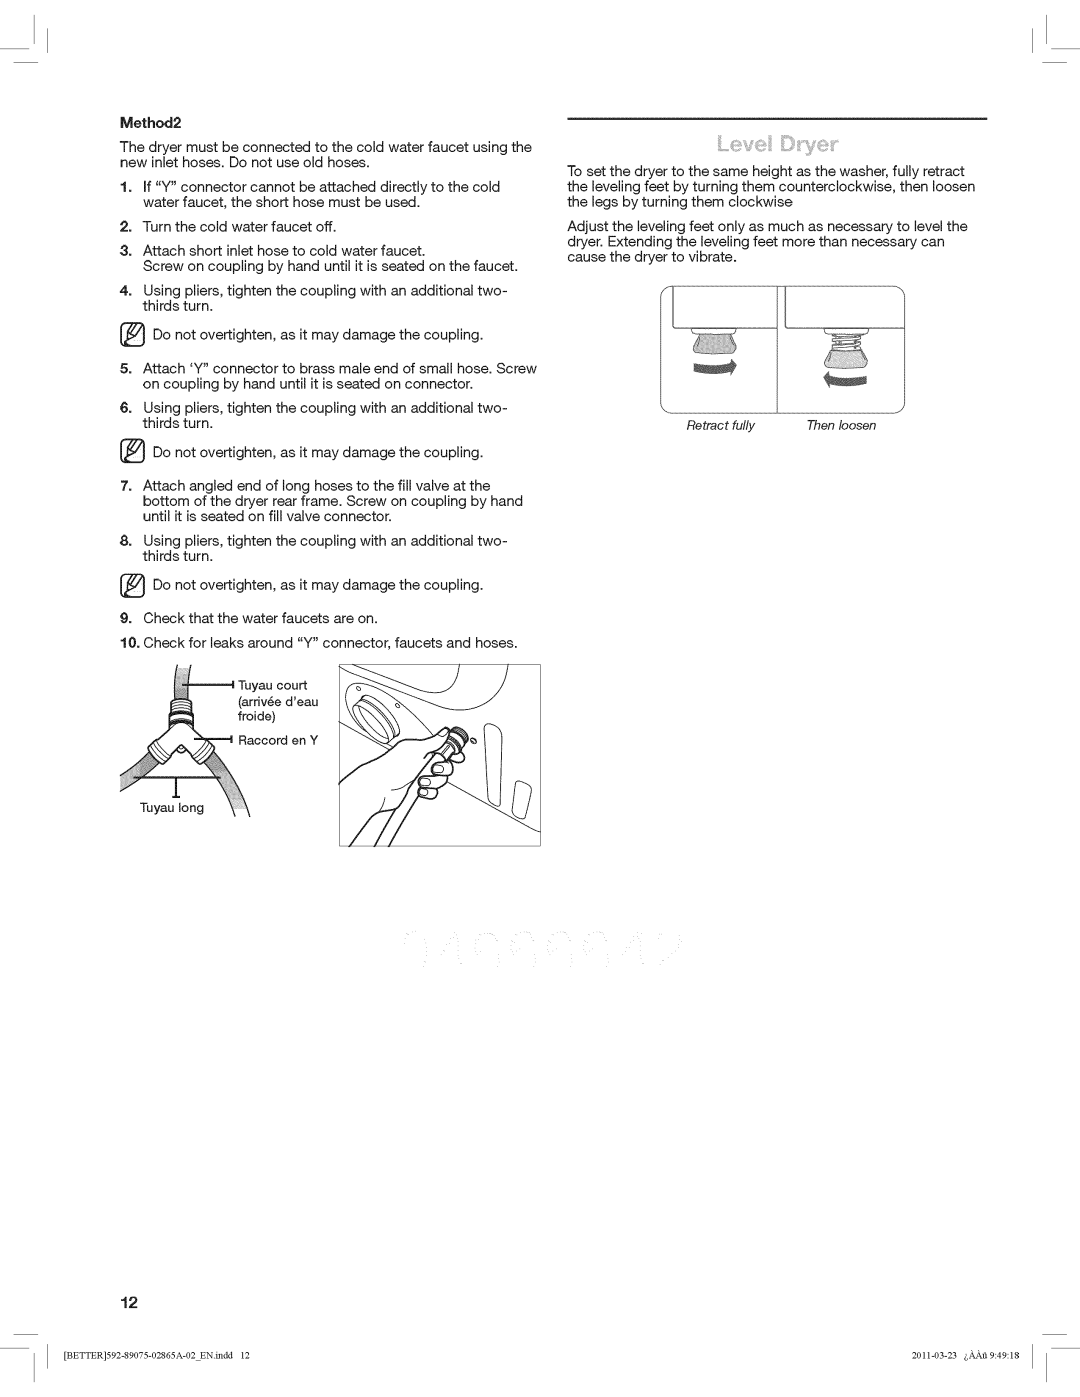 Kenmore 8907 manual Method2 